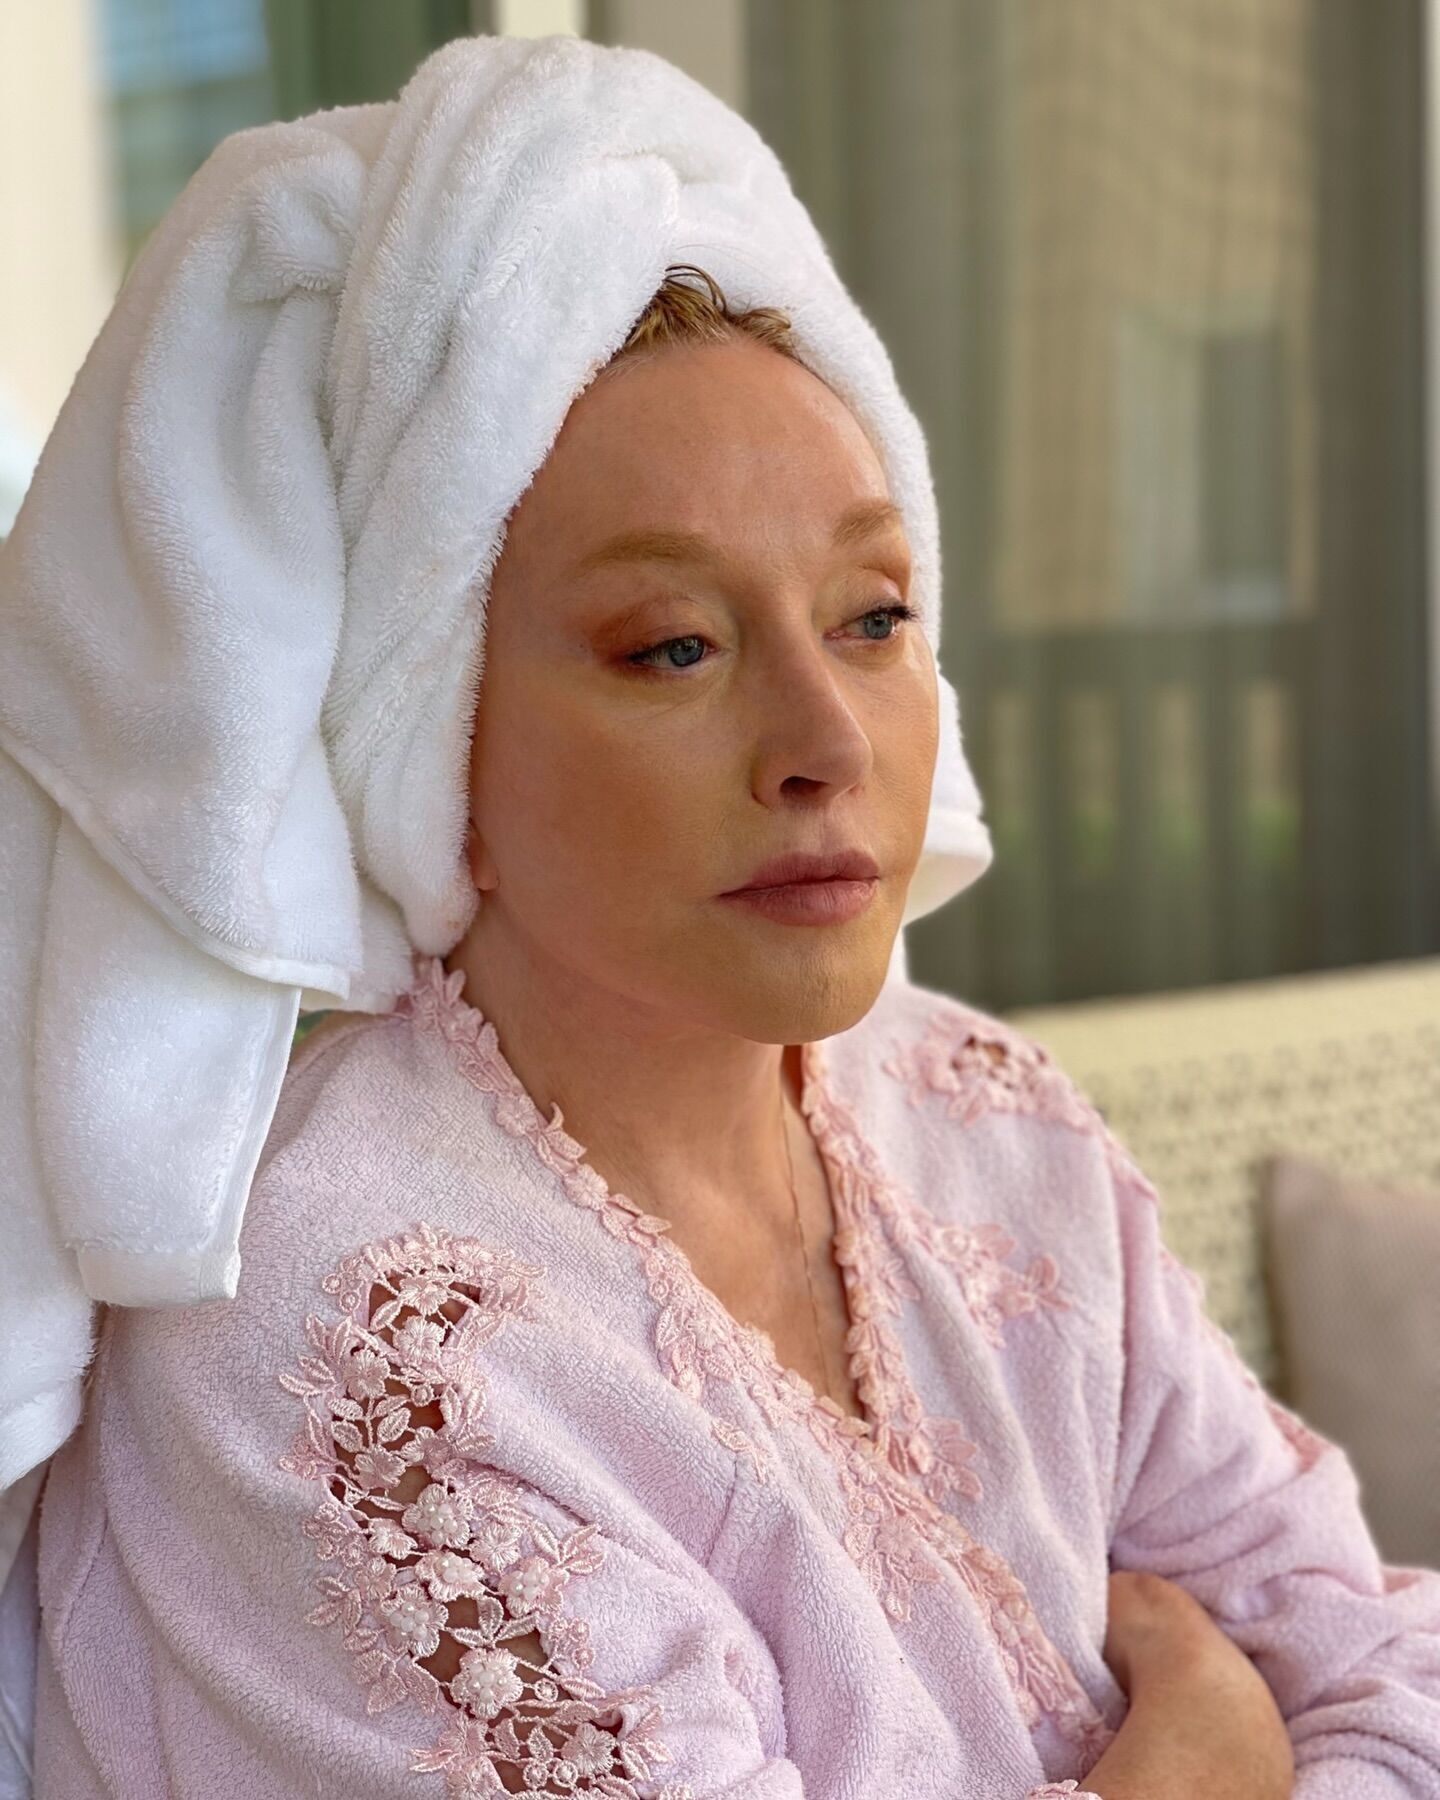 Алла Пугачева как она есть: Максим Галкин показал фото жены в халате и с полотенцем на голове